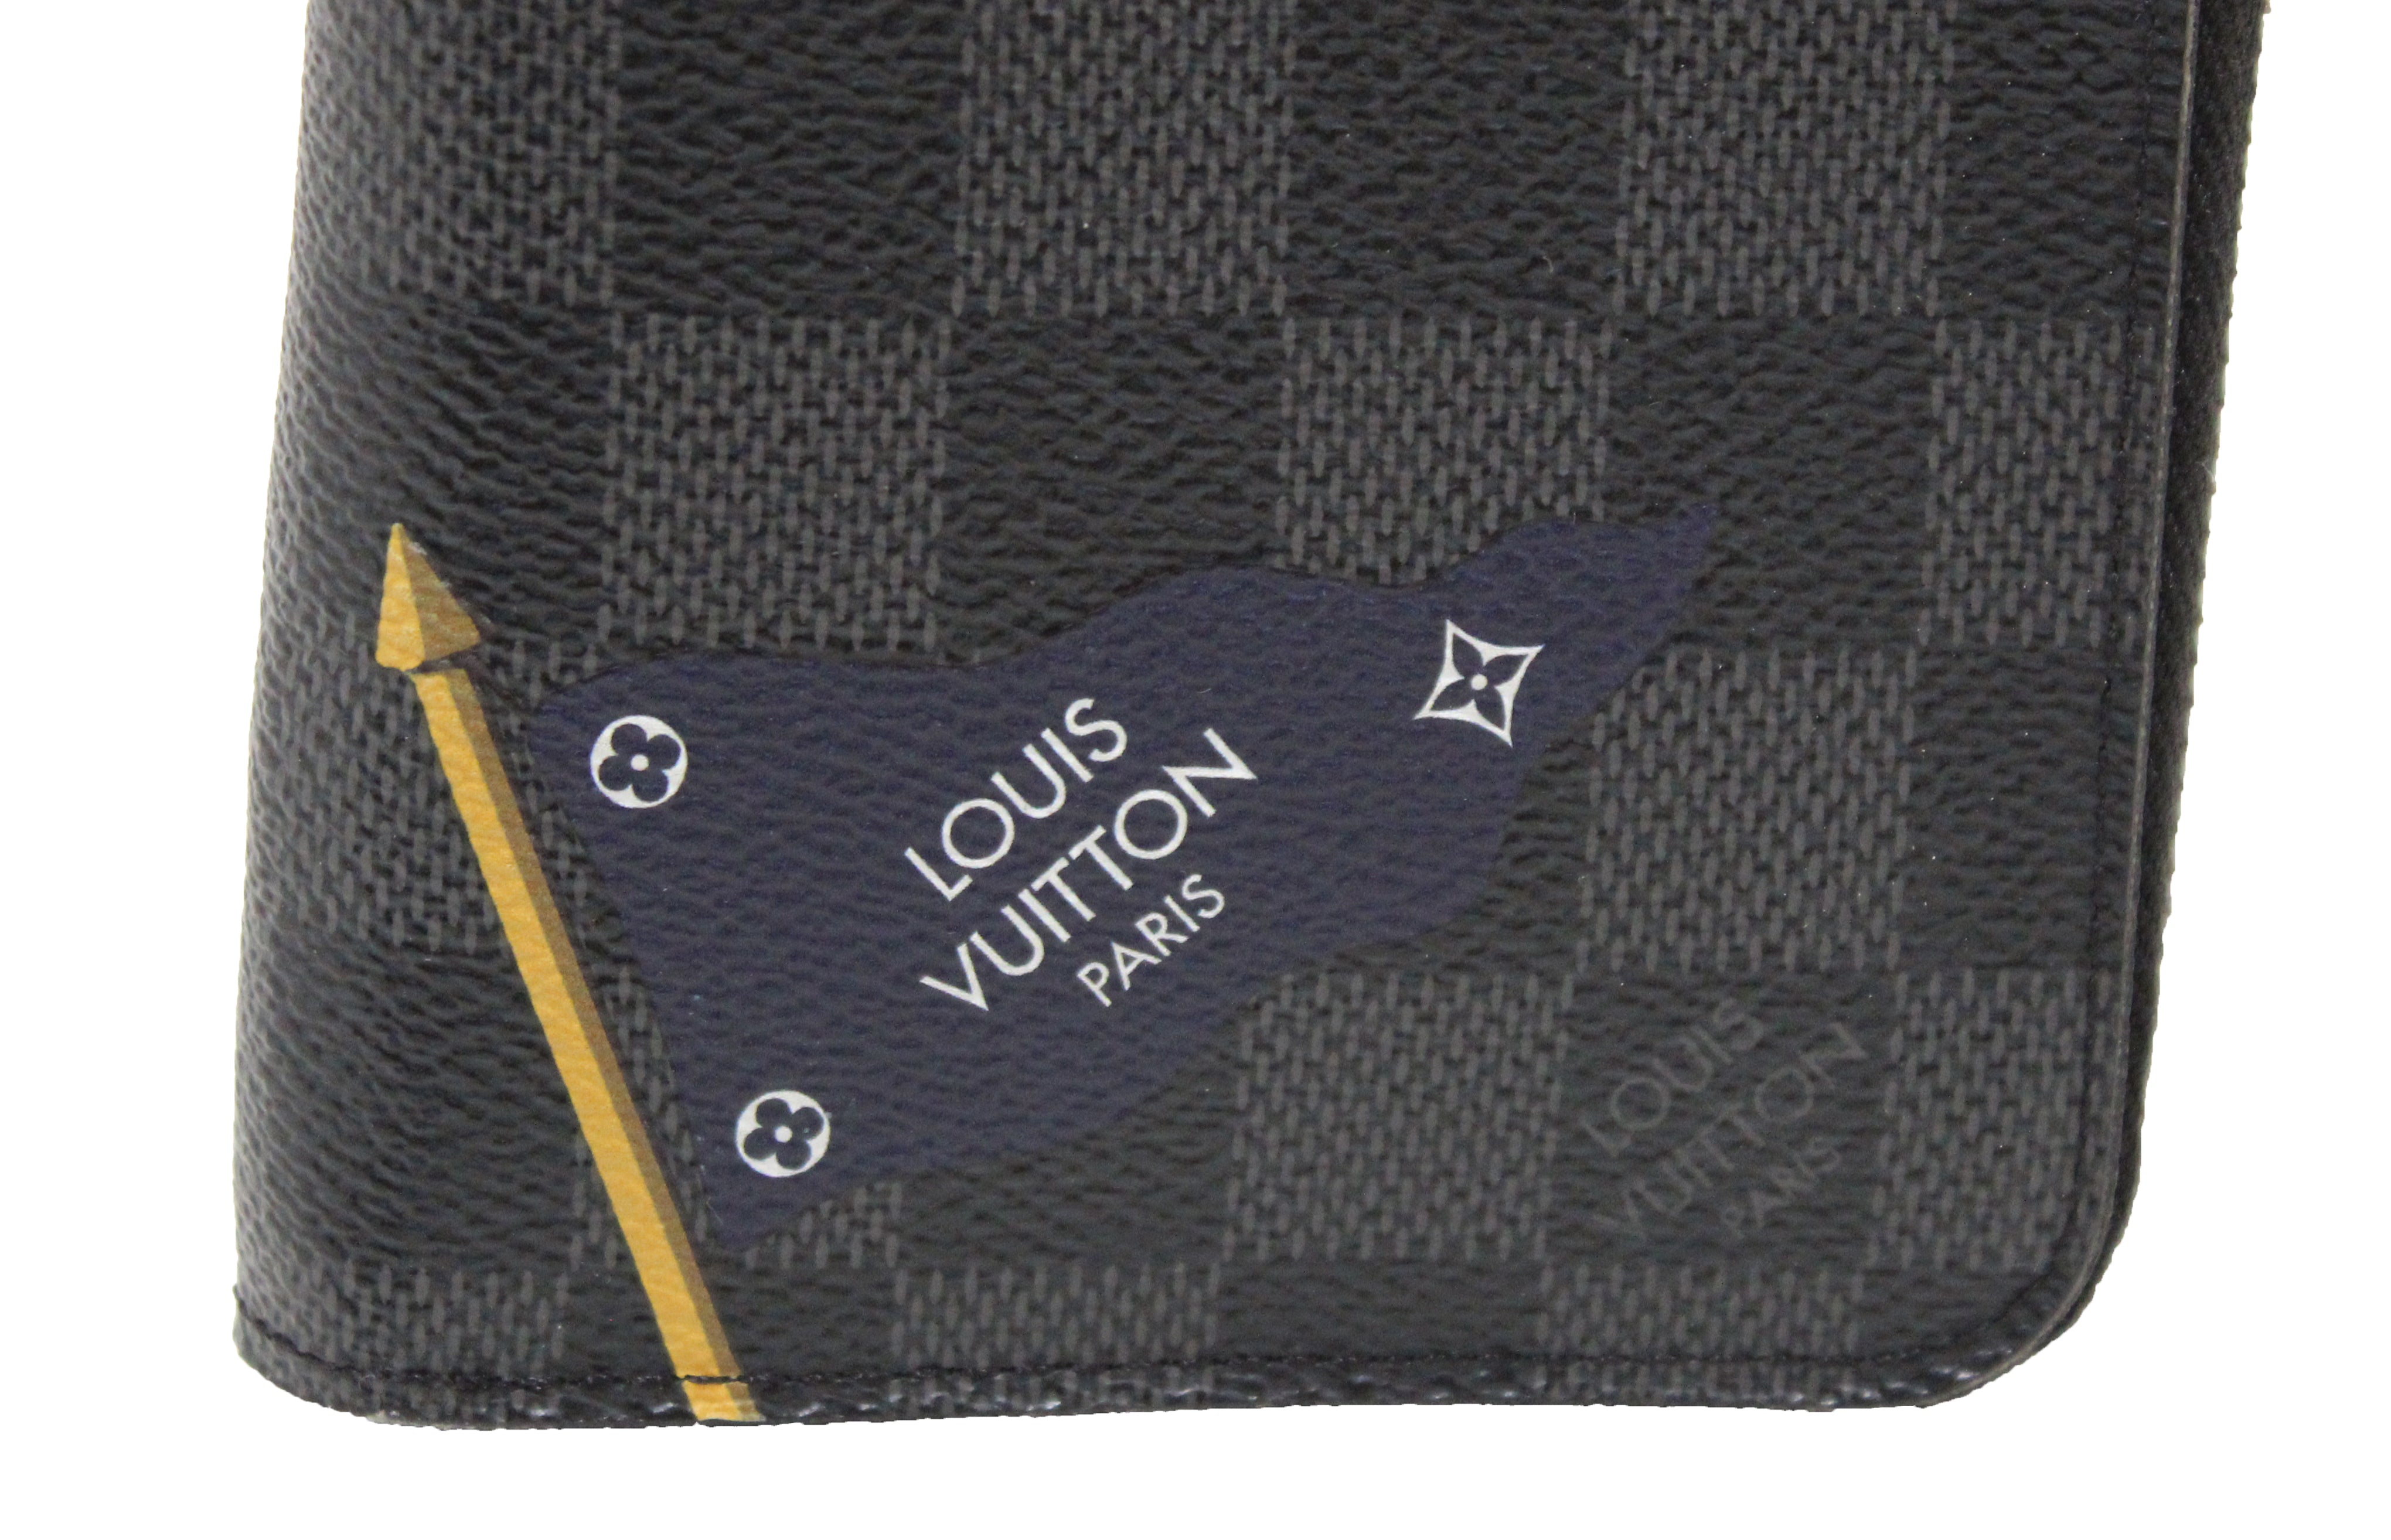 Authentic Louis Vuitton Limited Edition Damier Graphite "LV League" Vertical Zippy Wallet